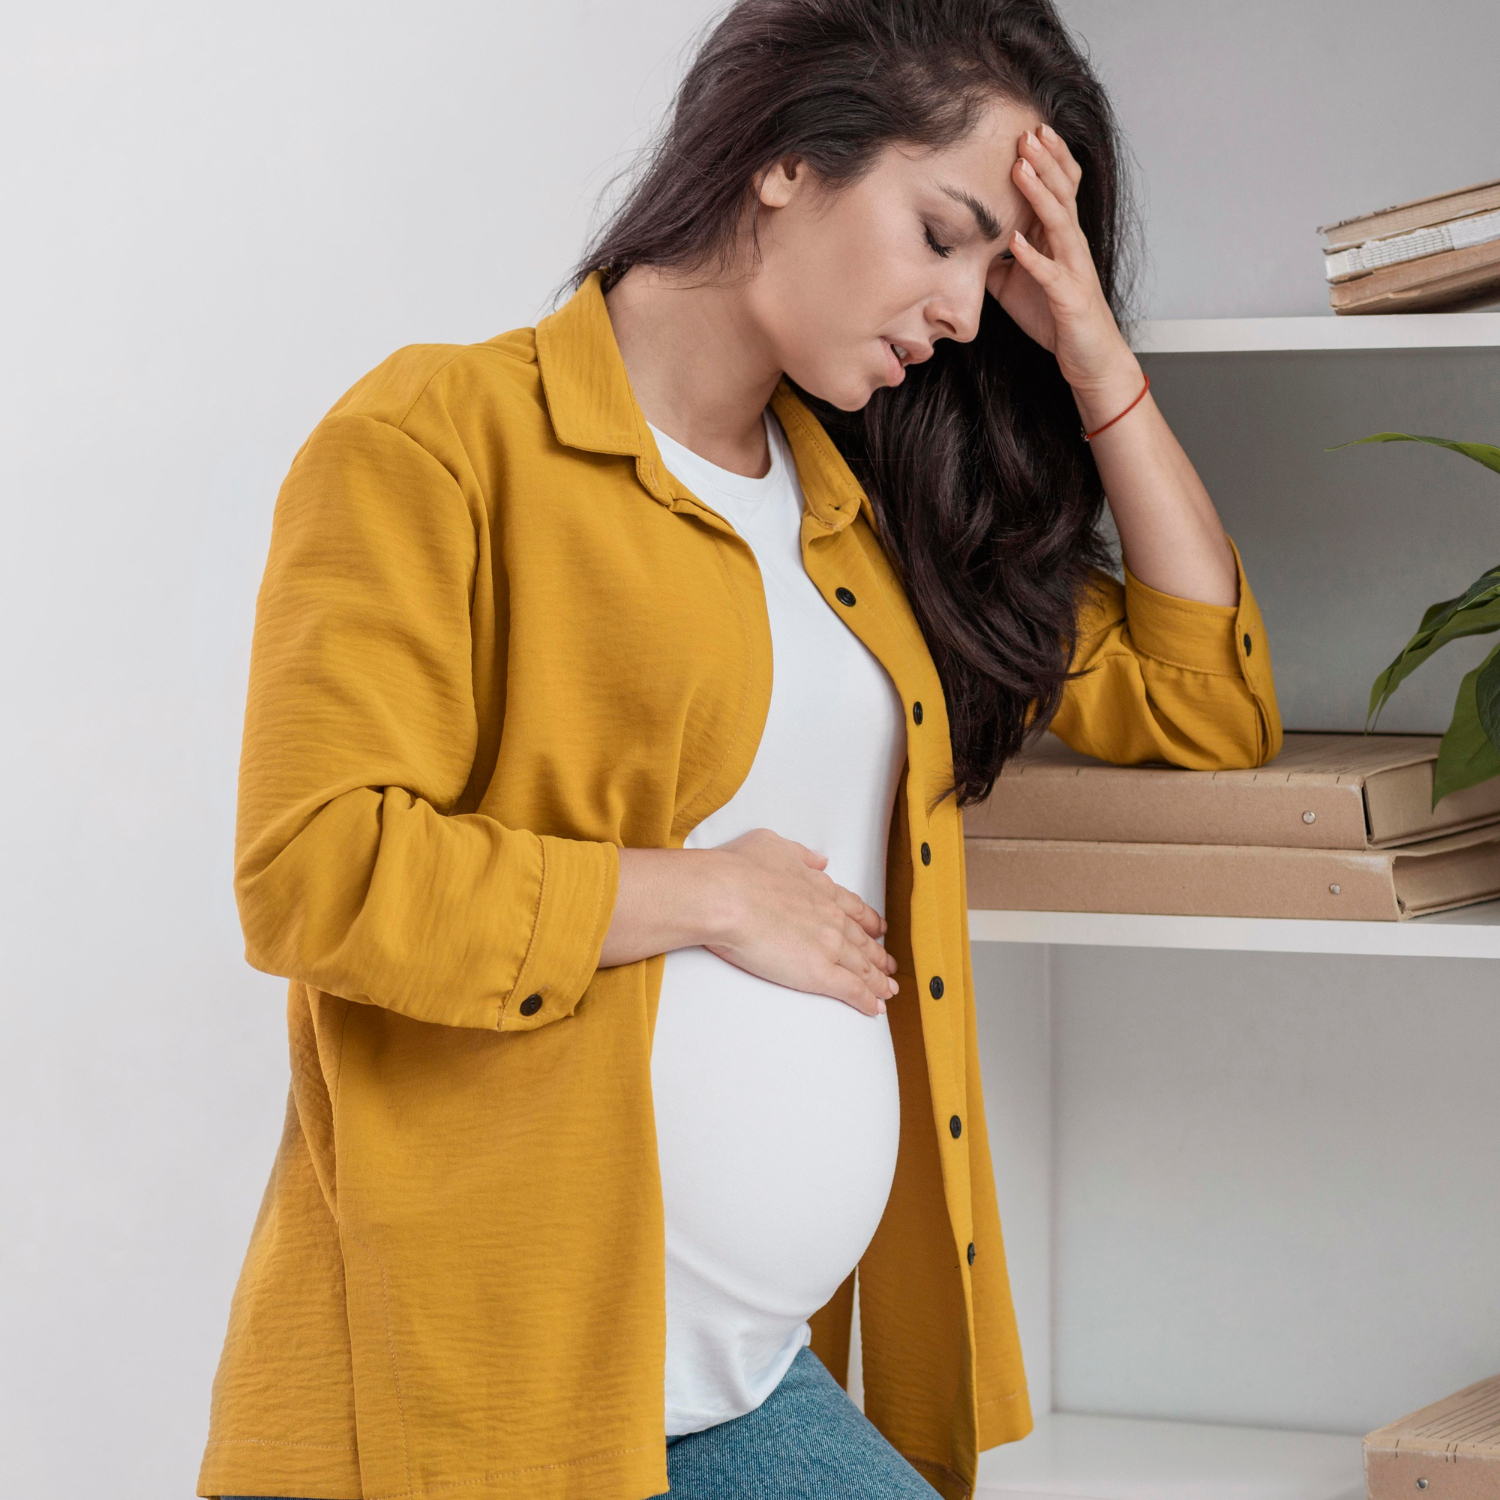 أعراض فشل الحمل بعد ترجيع الأجنة